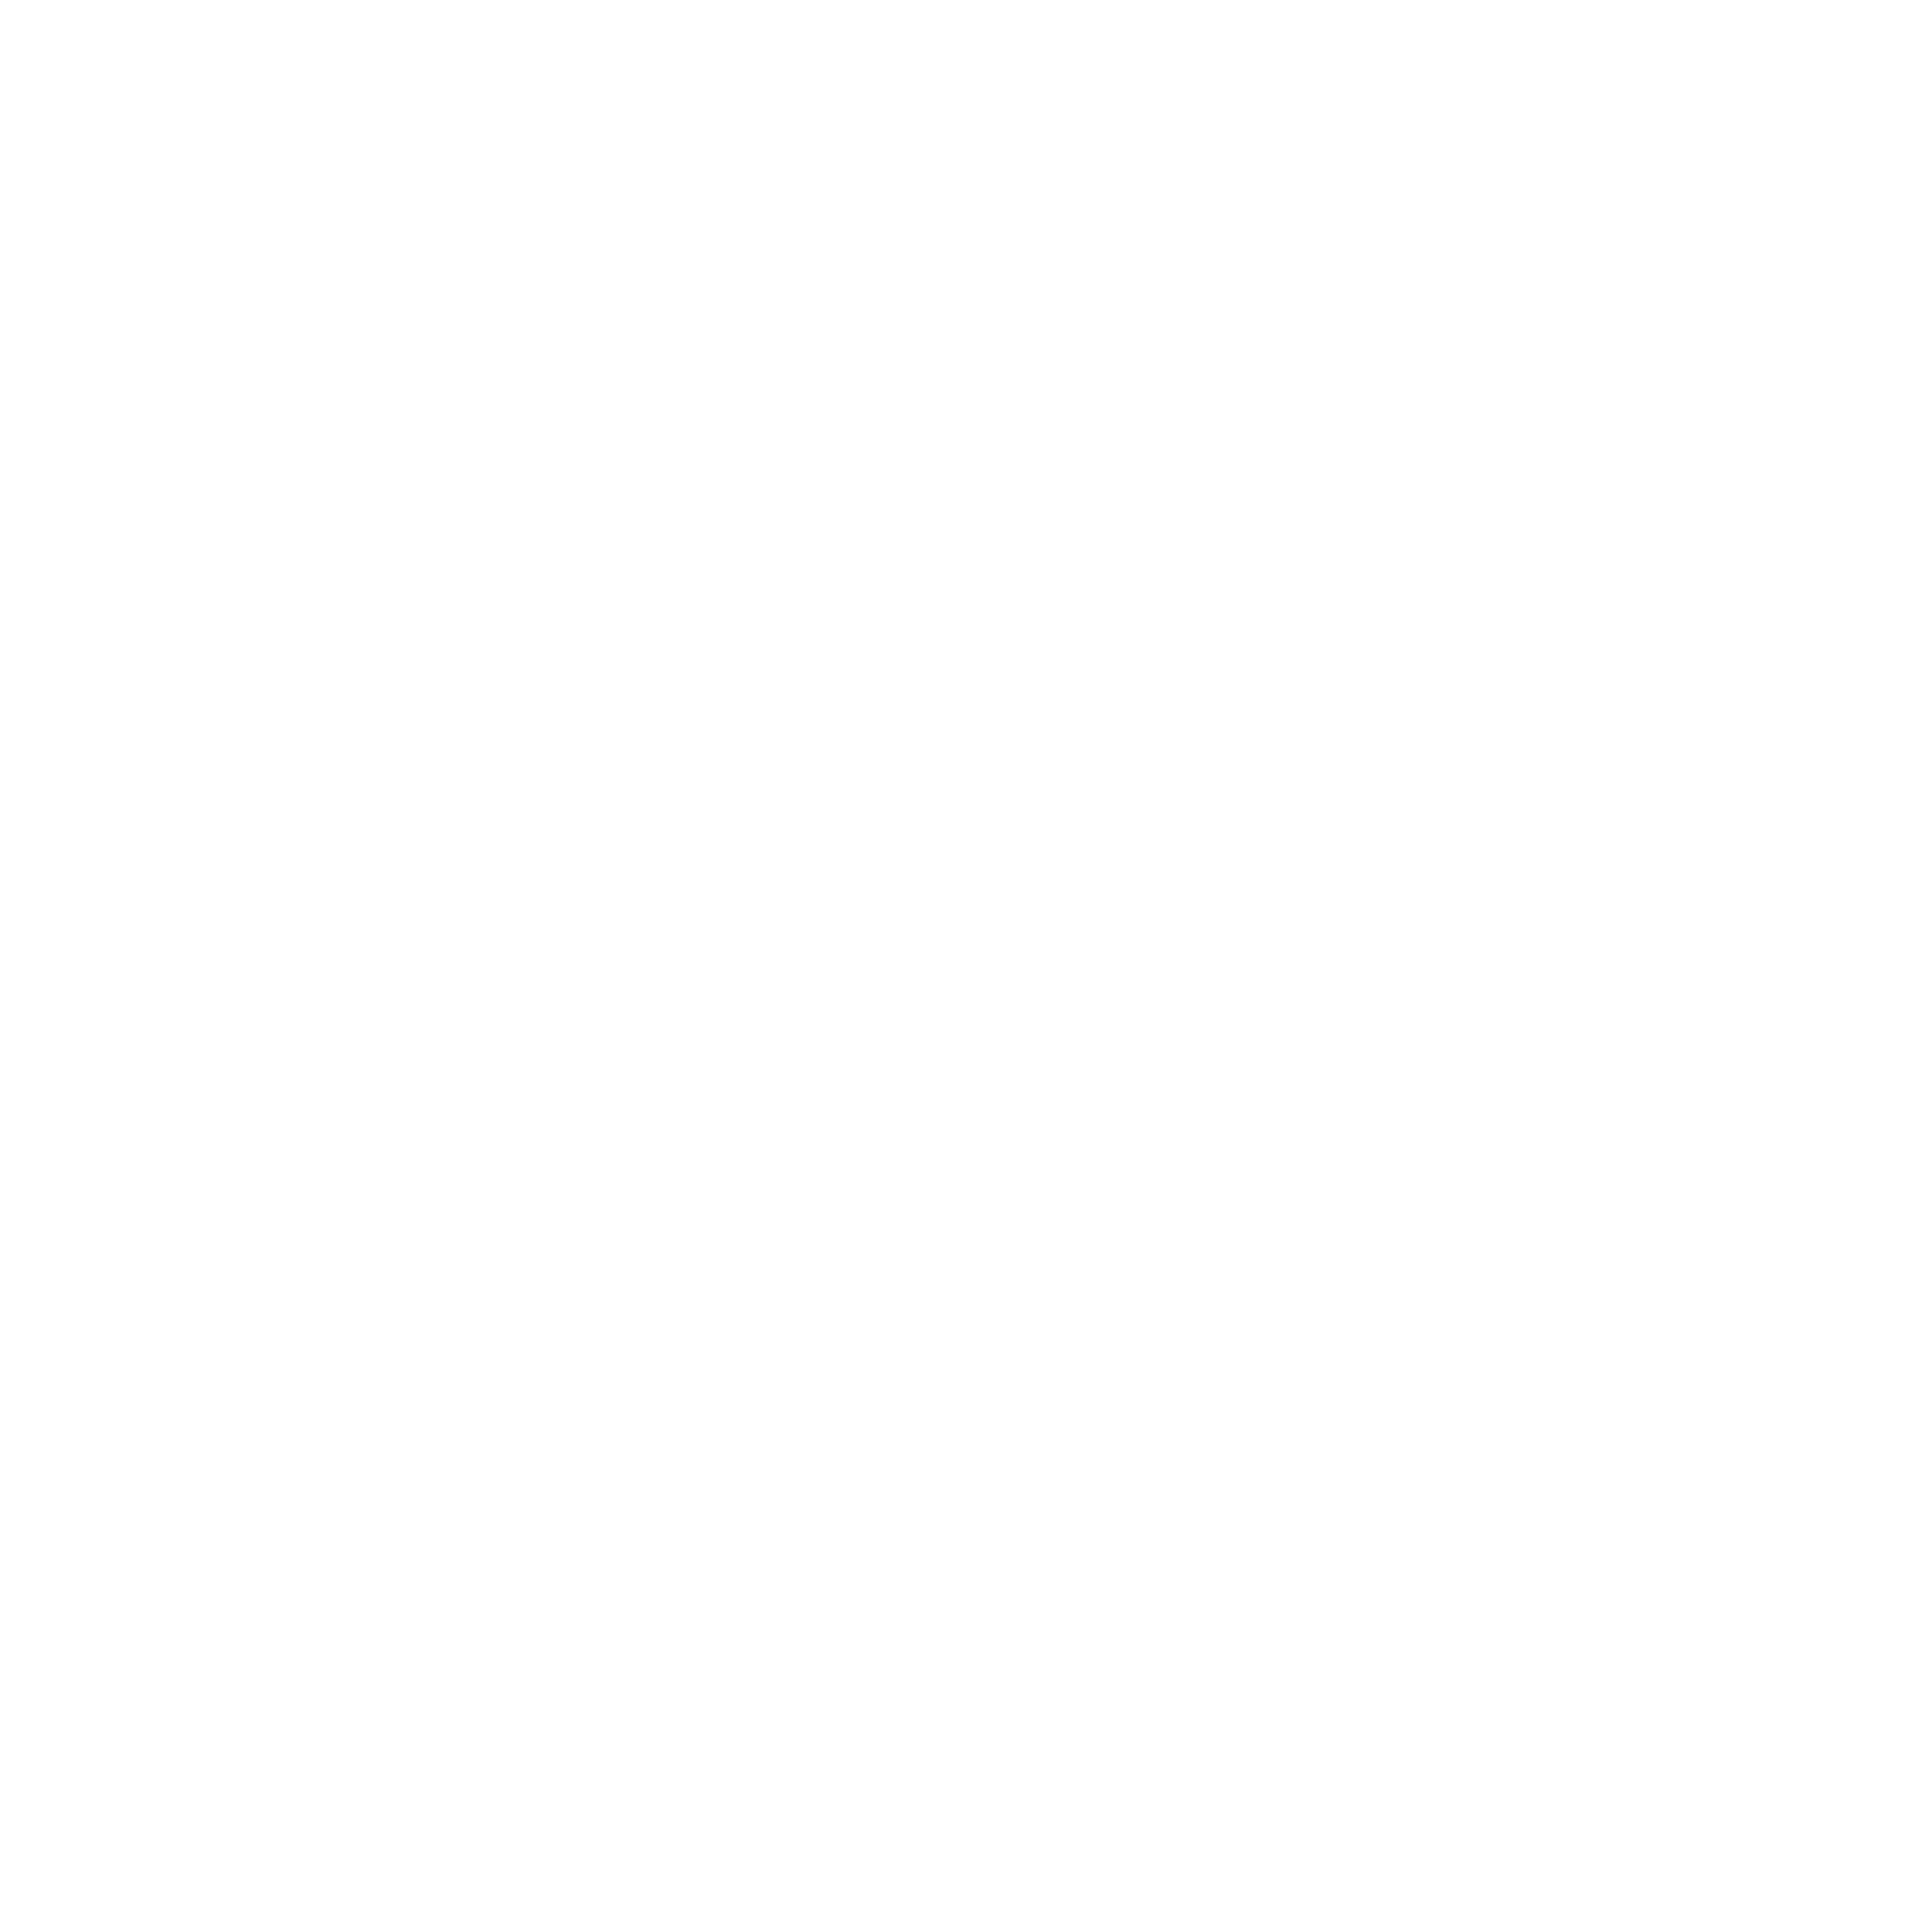 MITSUBISHI_LOGO-2